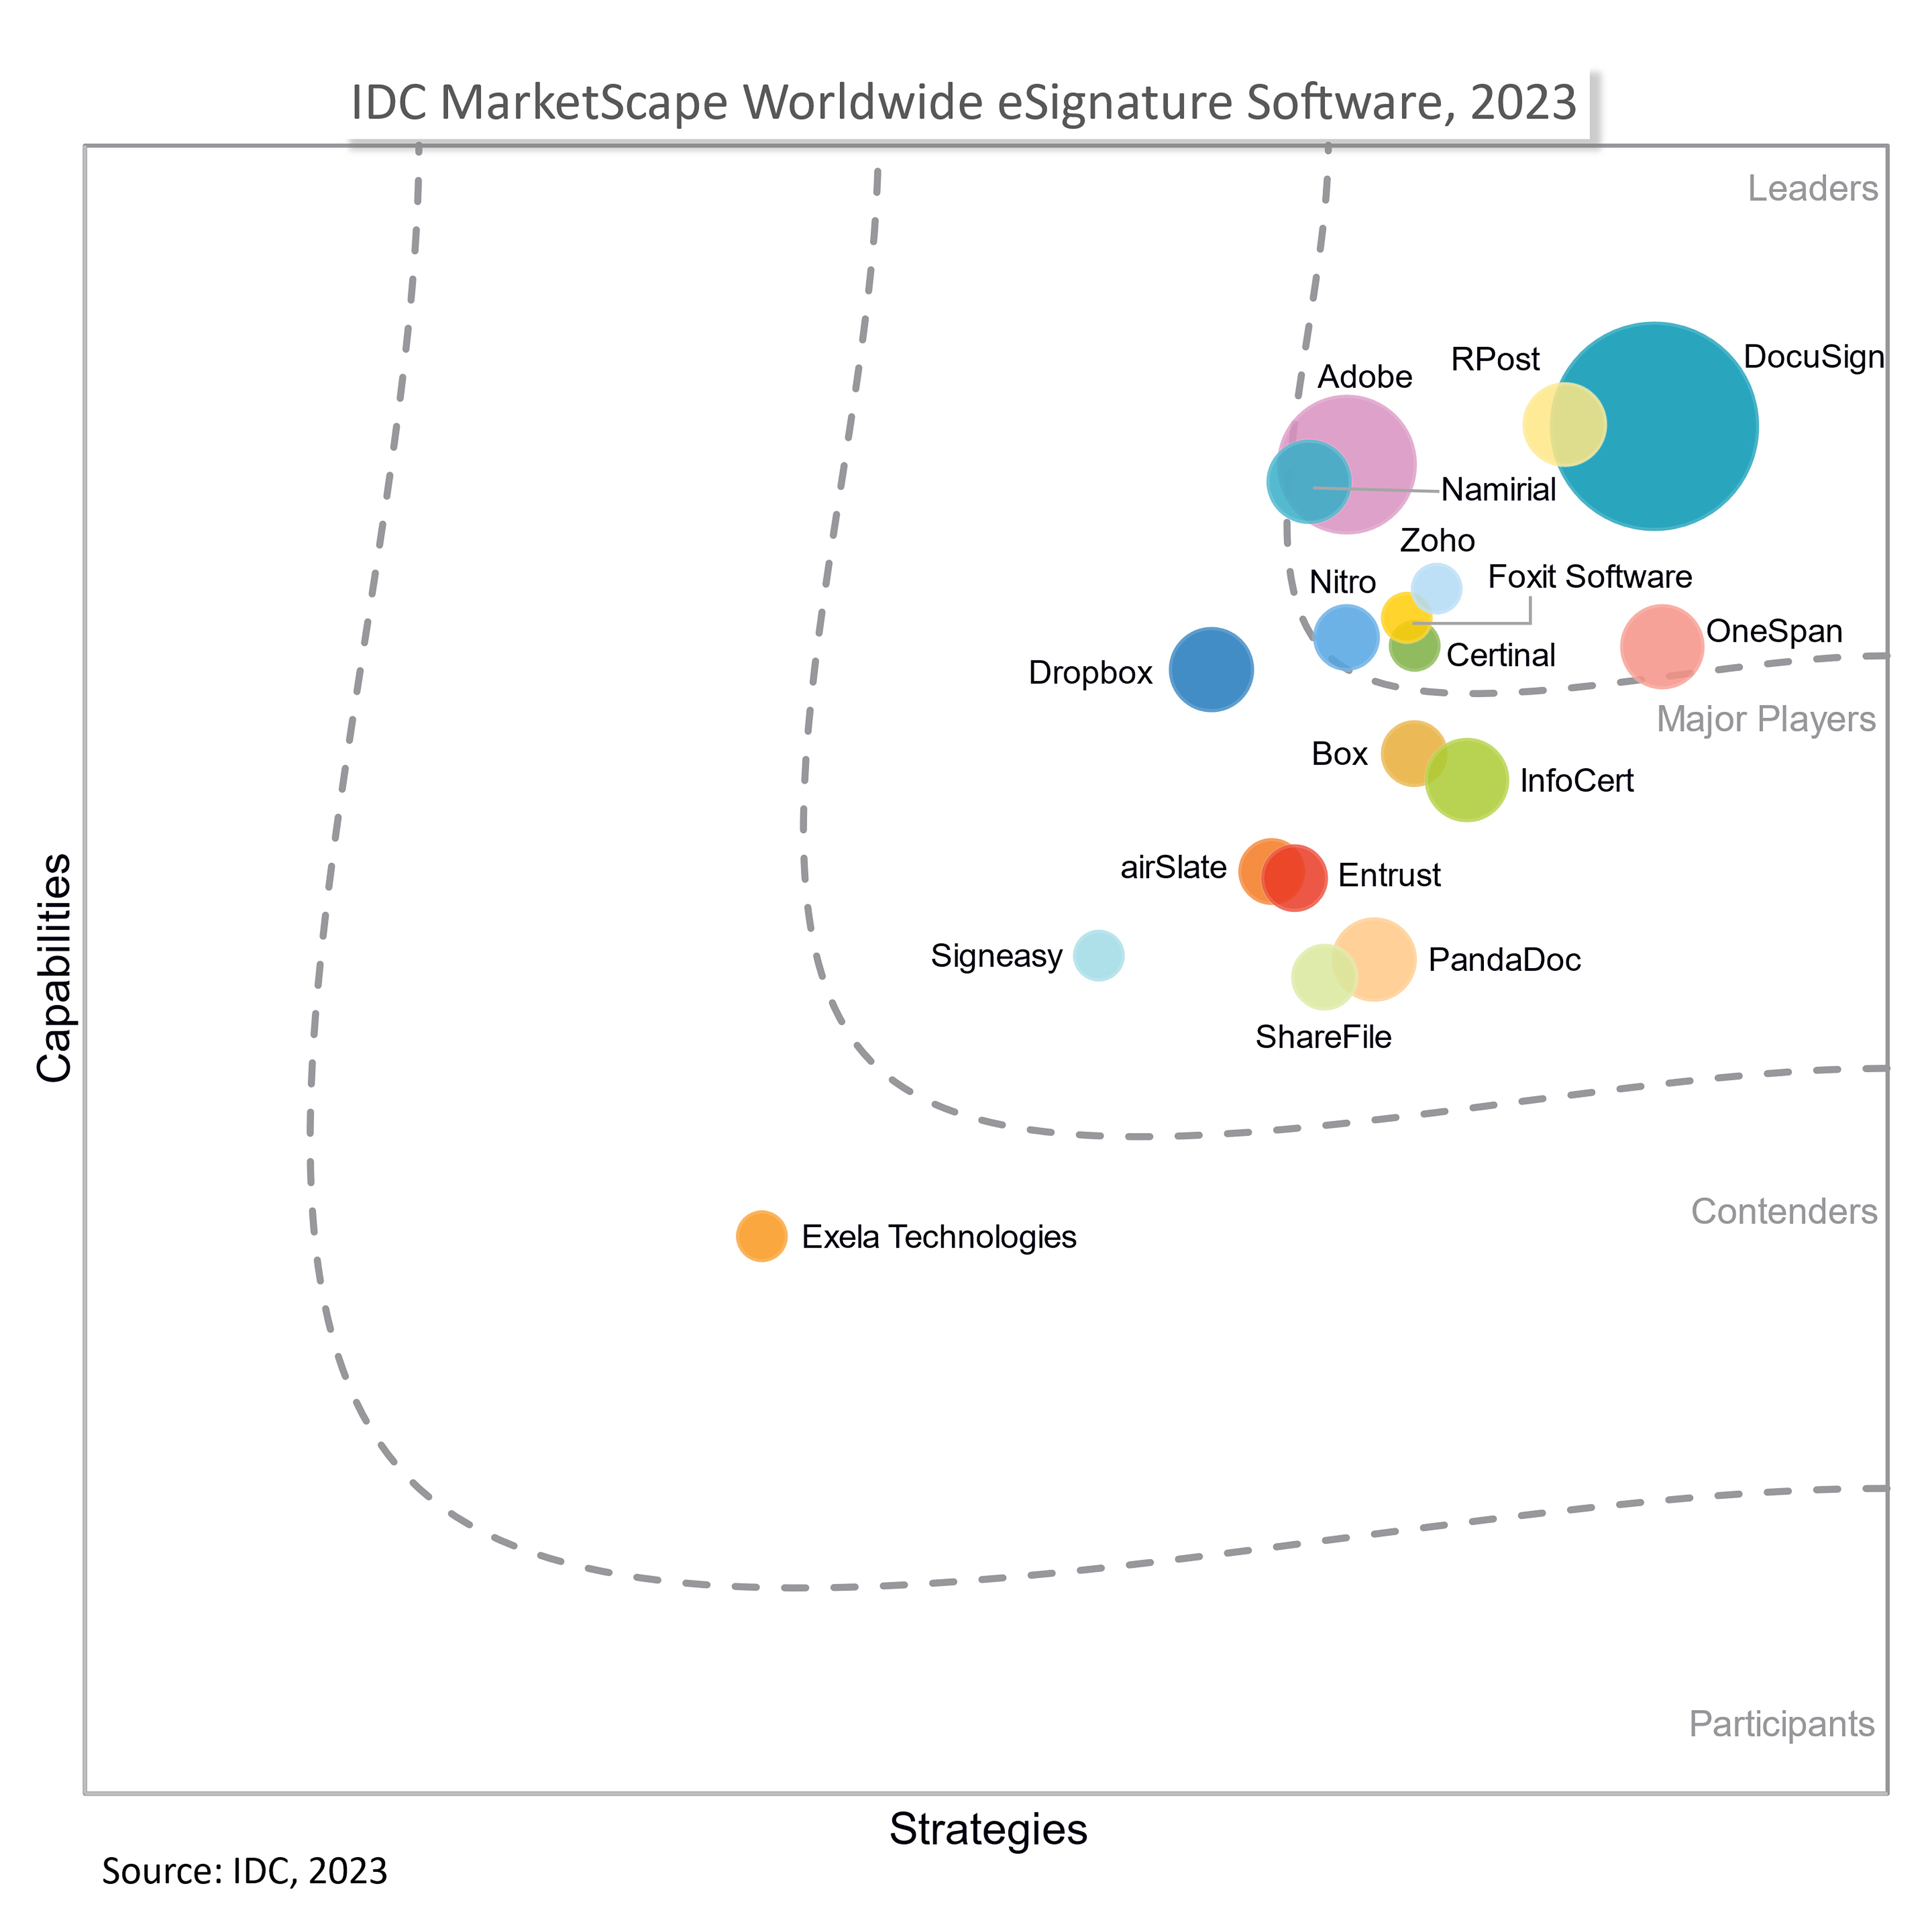 IDC MarketScape Leader in eSignature Software